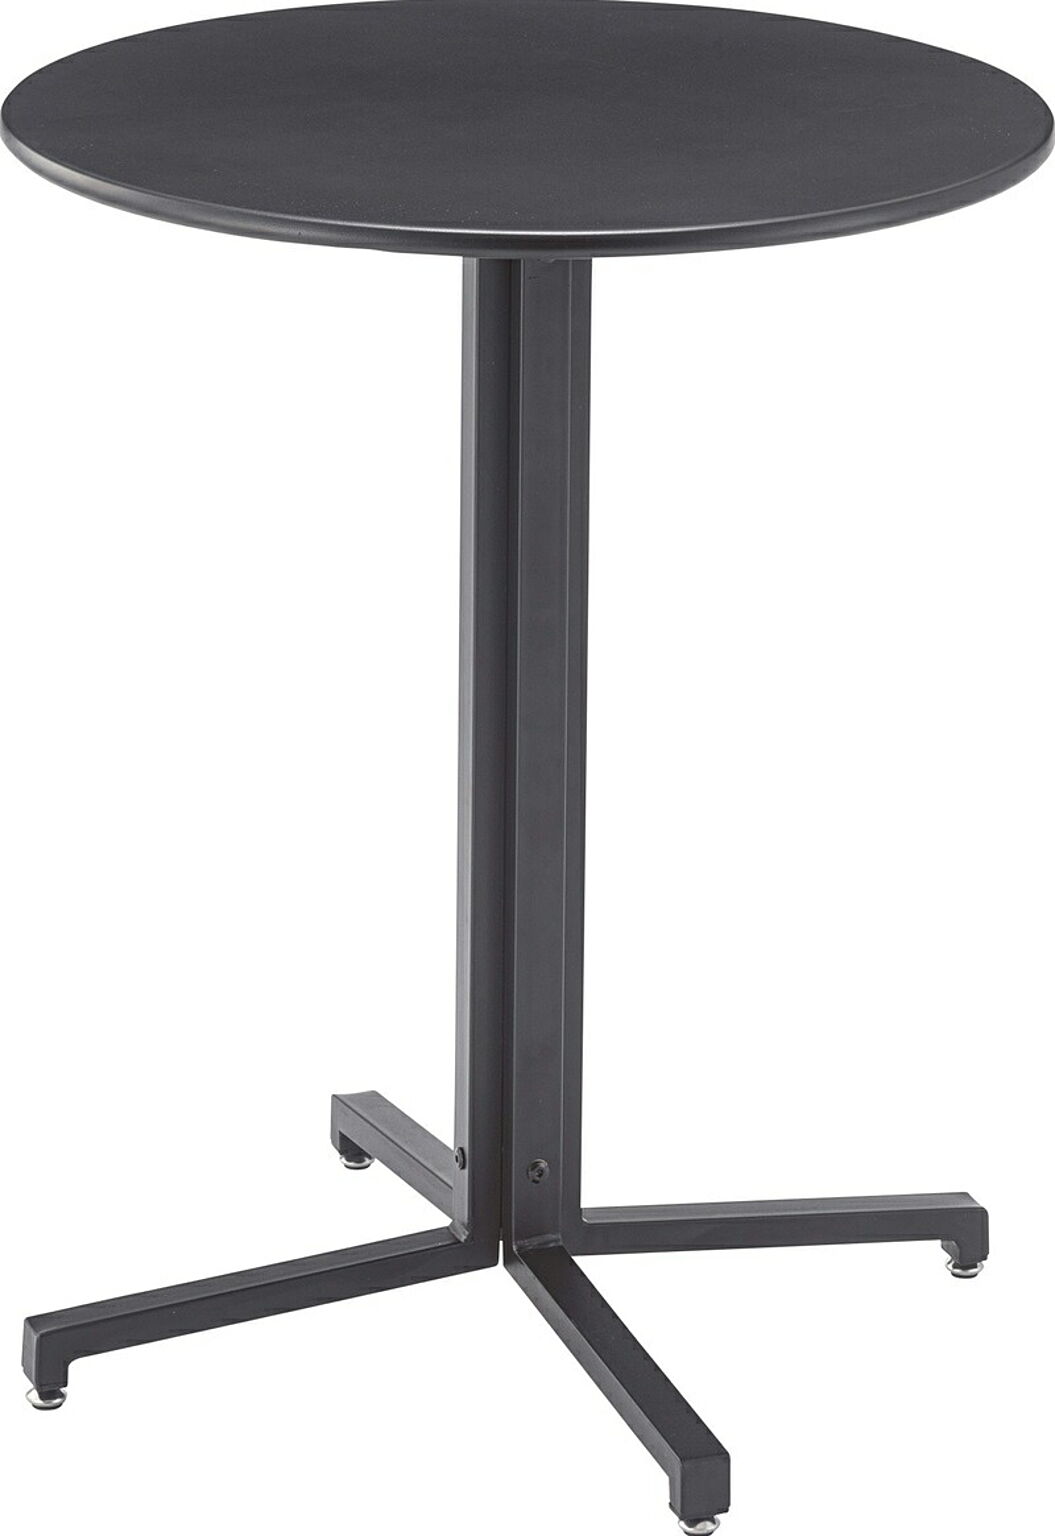 カフェテーブル W60×D60×H73 ブラック テーブル カフェテーブル 丸型 サークル 丸 ダイニングテーブル オフィス アジャスター付き スチール スタイリッシュ シンプル ブラック グレー 